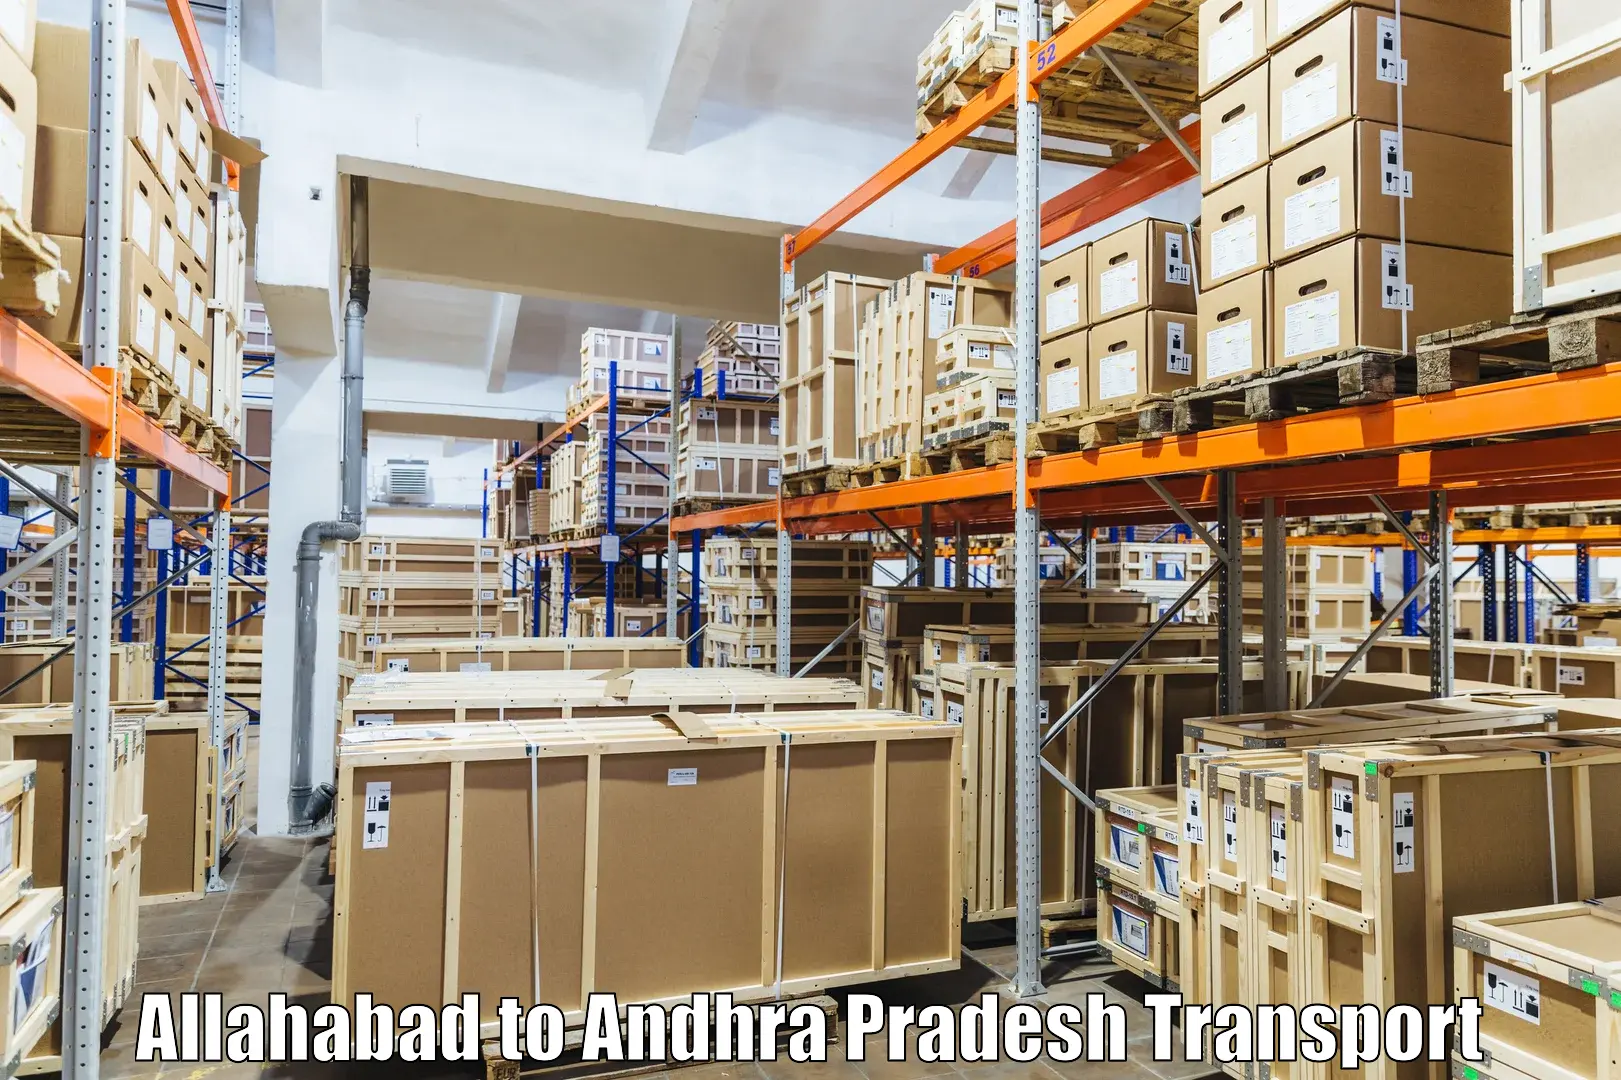 All India transport service Allahabad to Doranala